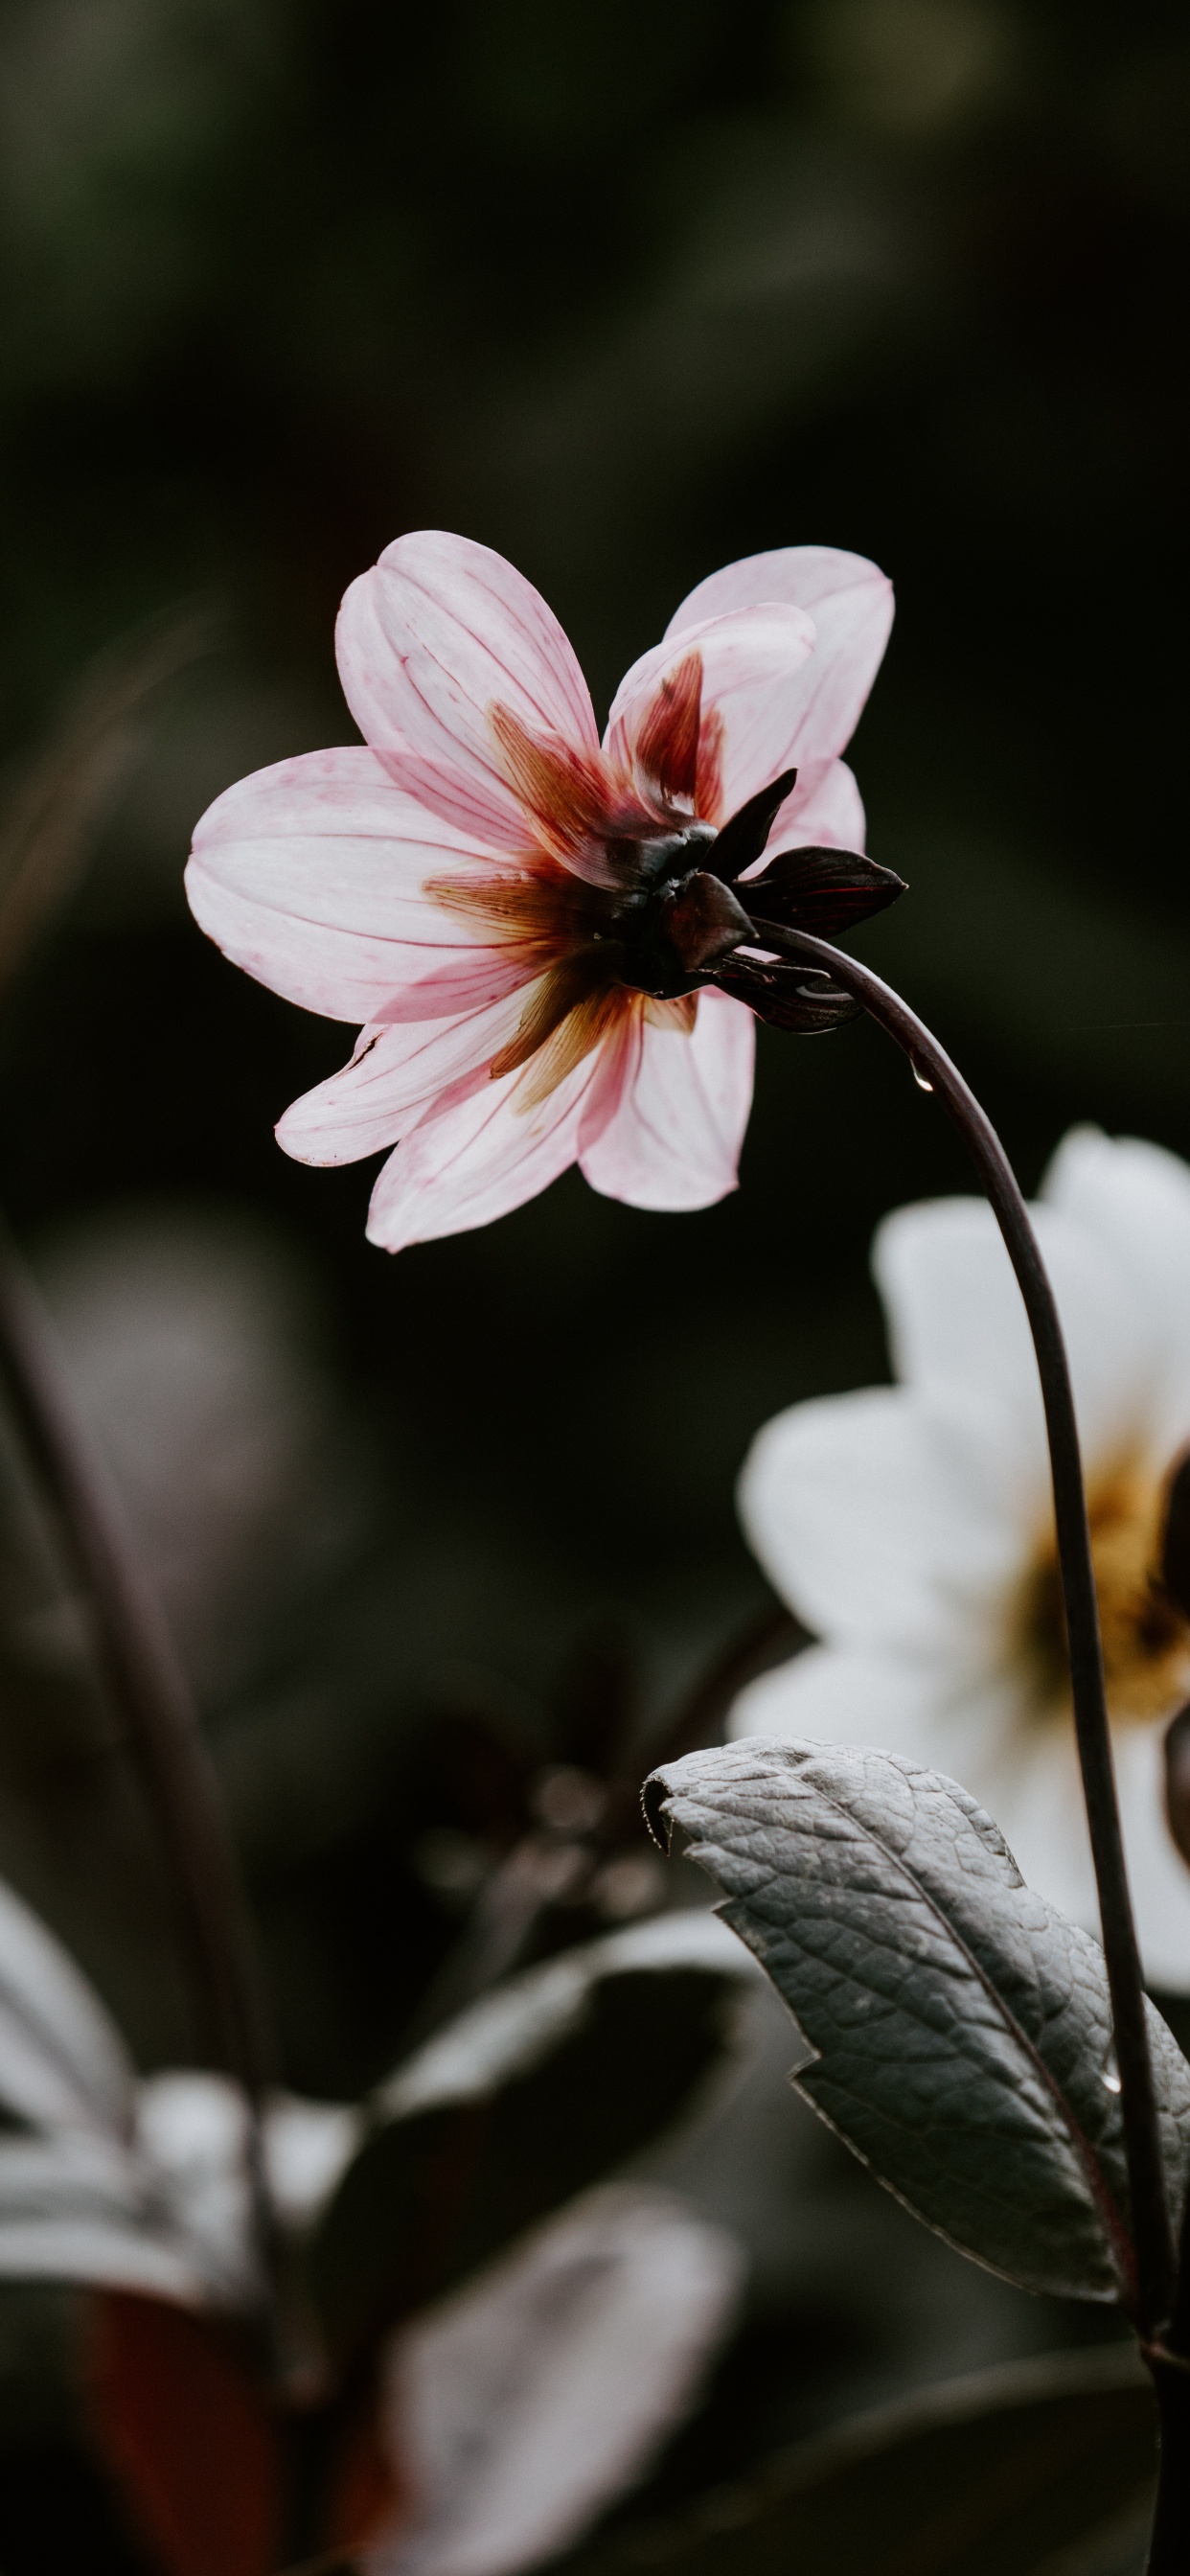 Pink and White Flower in Tilt Shift Lens. Wallpaper in 1242x2688 Resolution